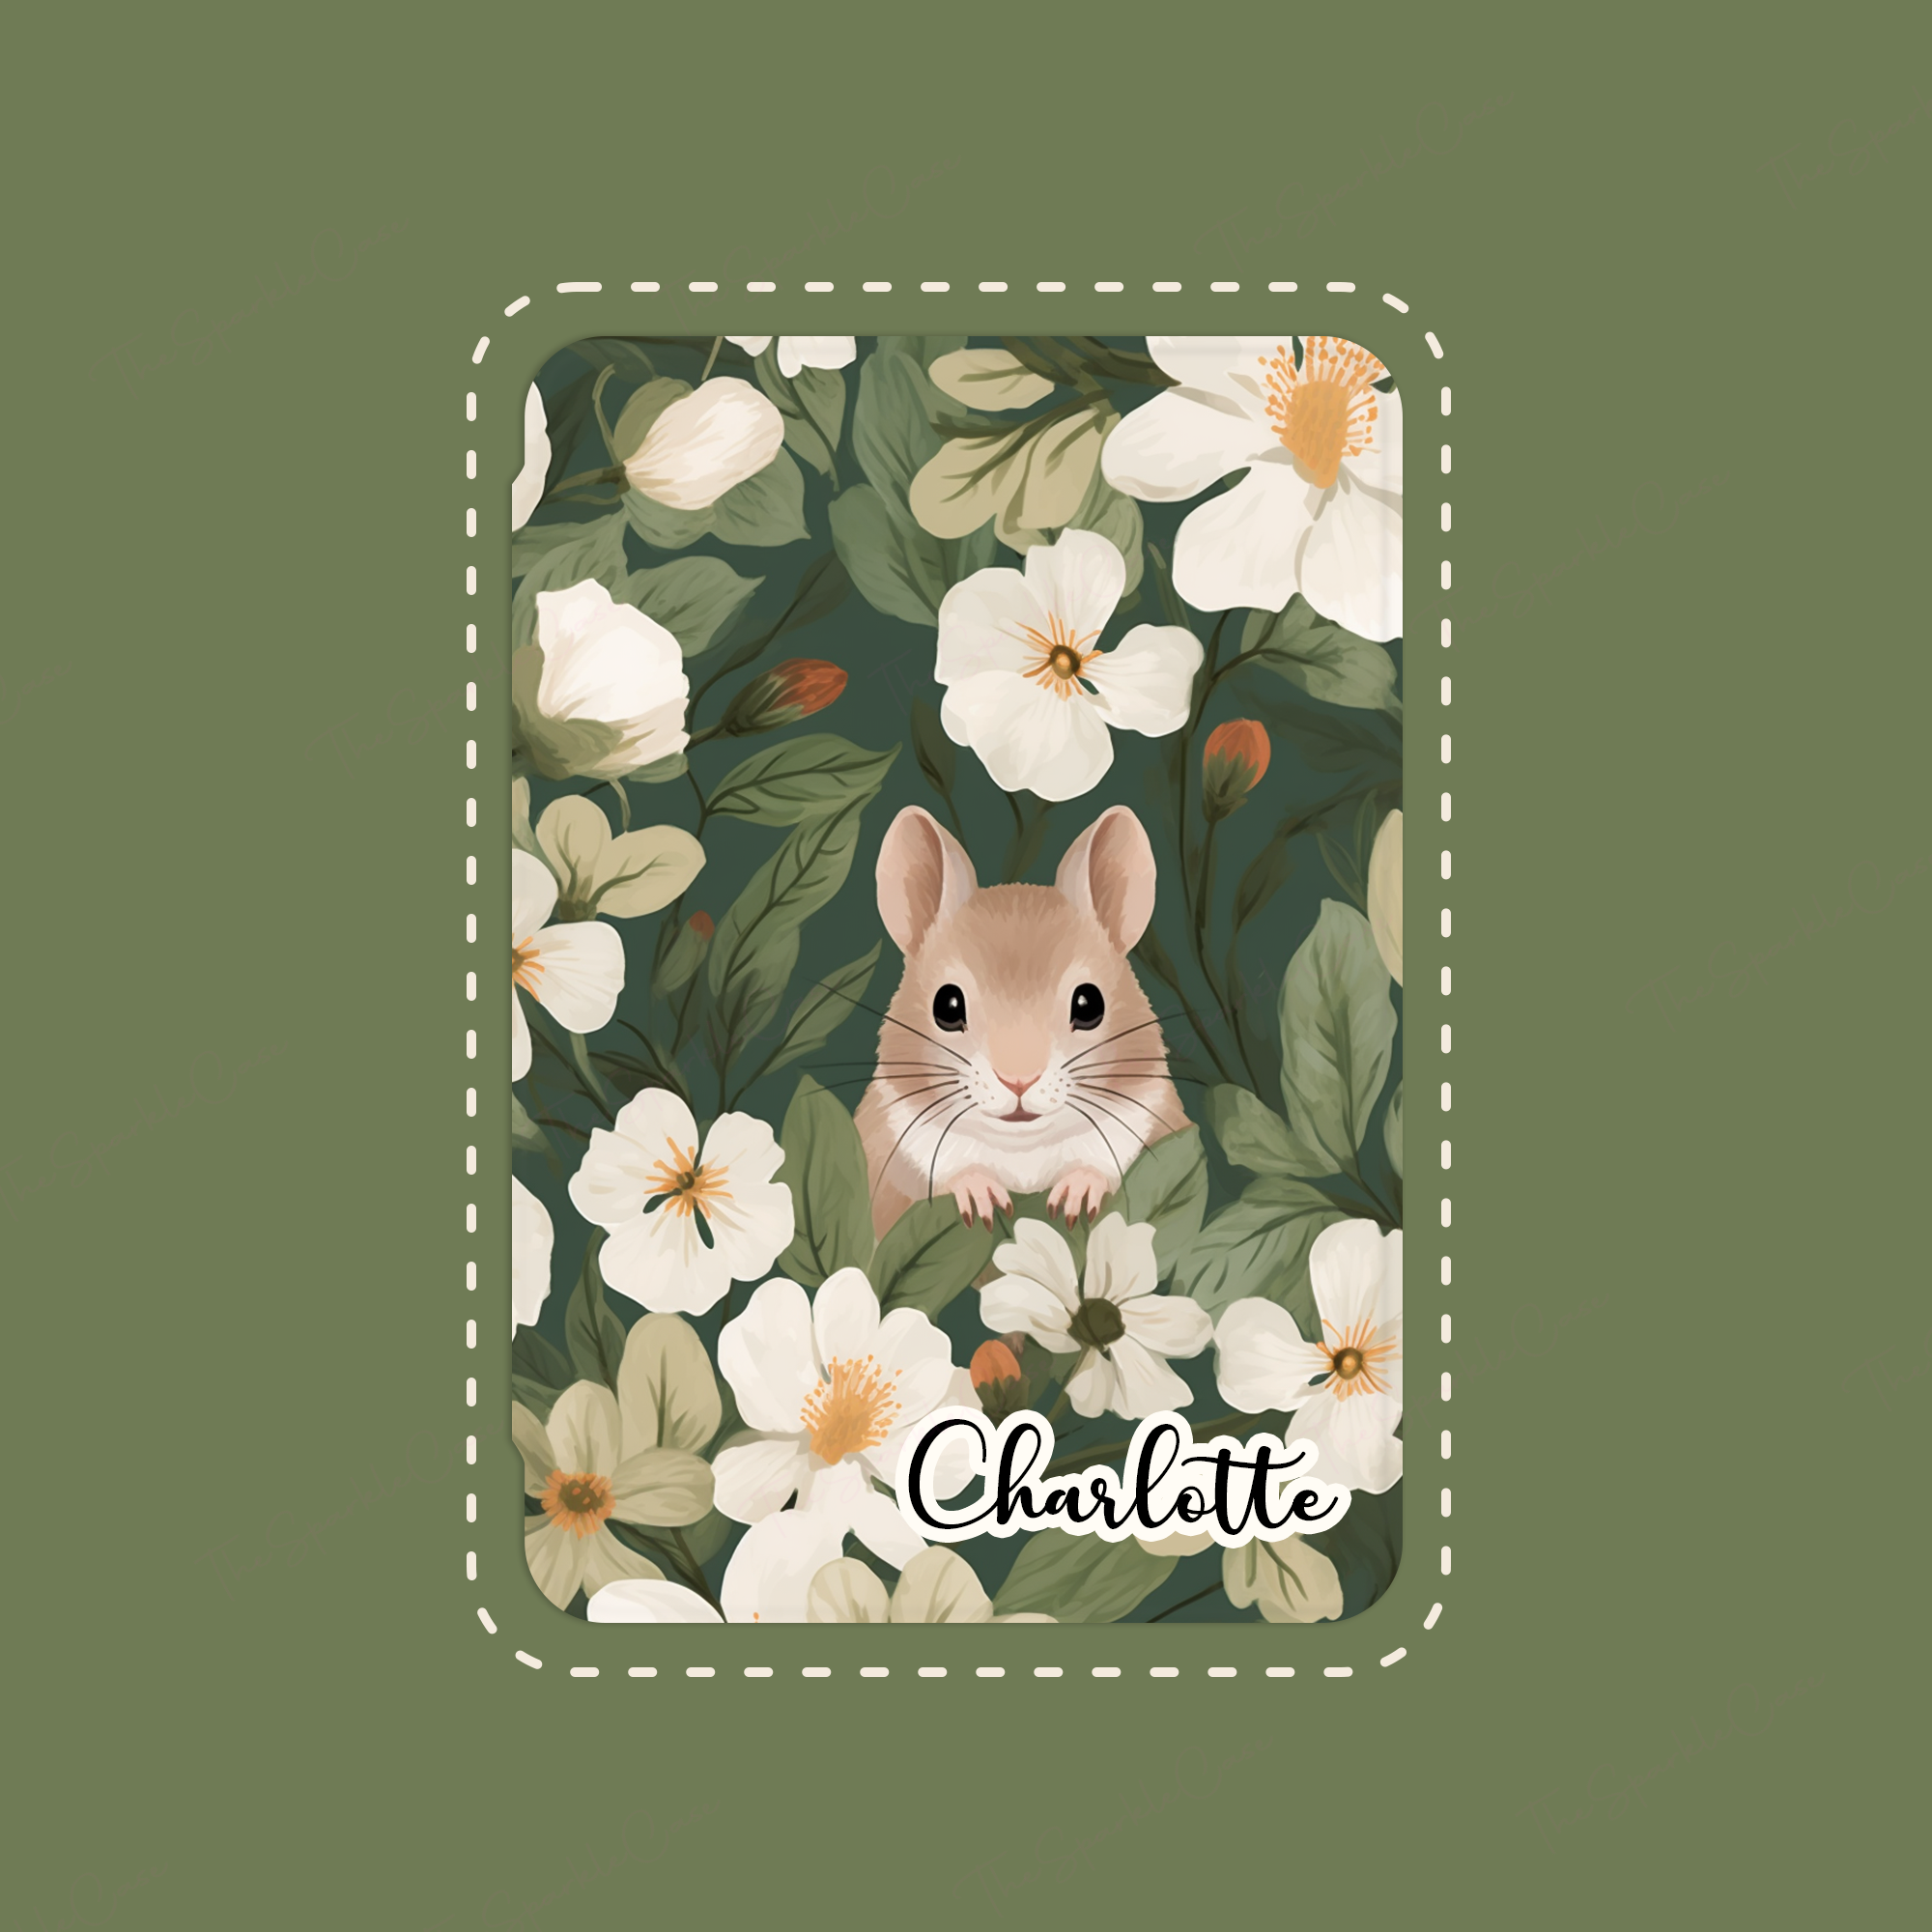 Cute Squirrels iPad Case Cover Free Personalization